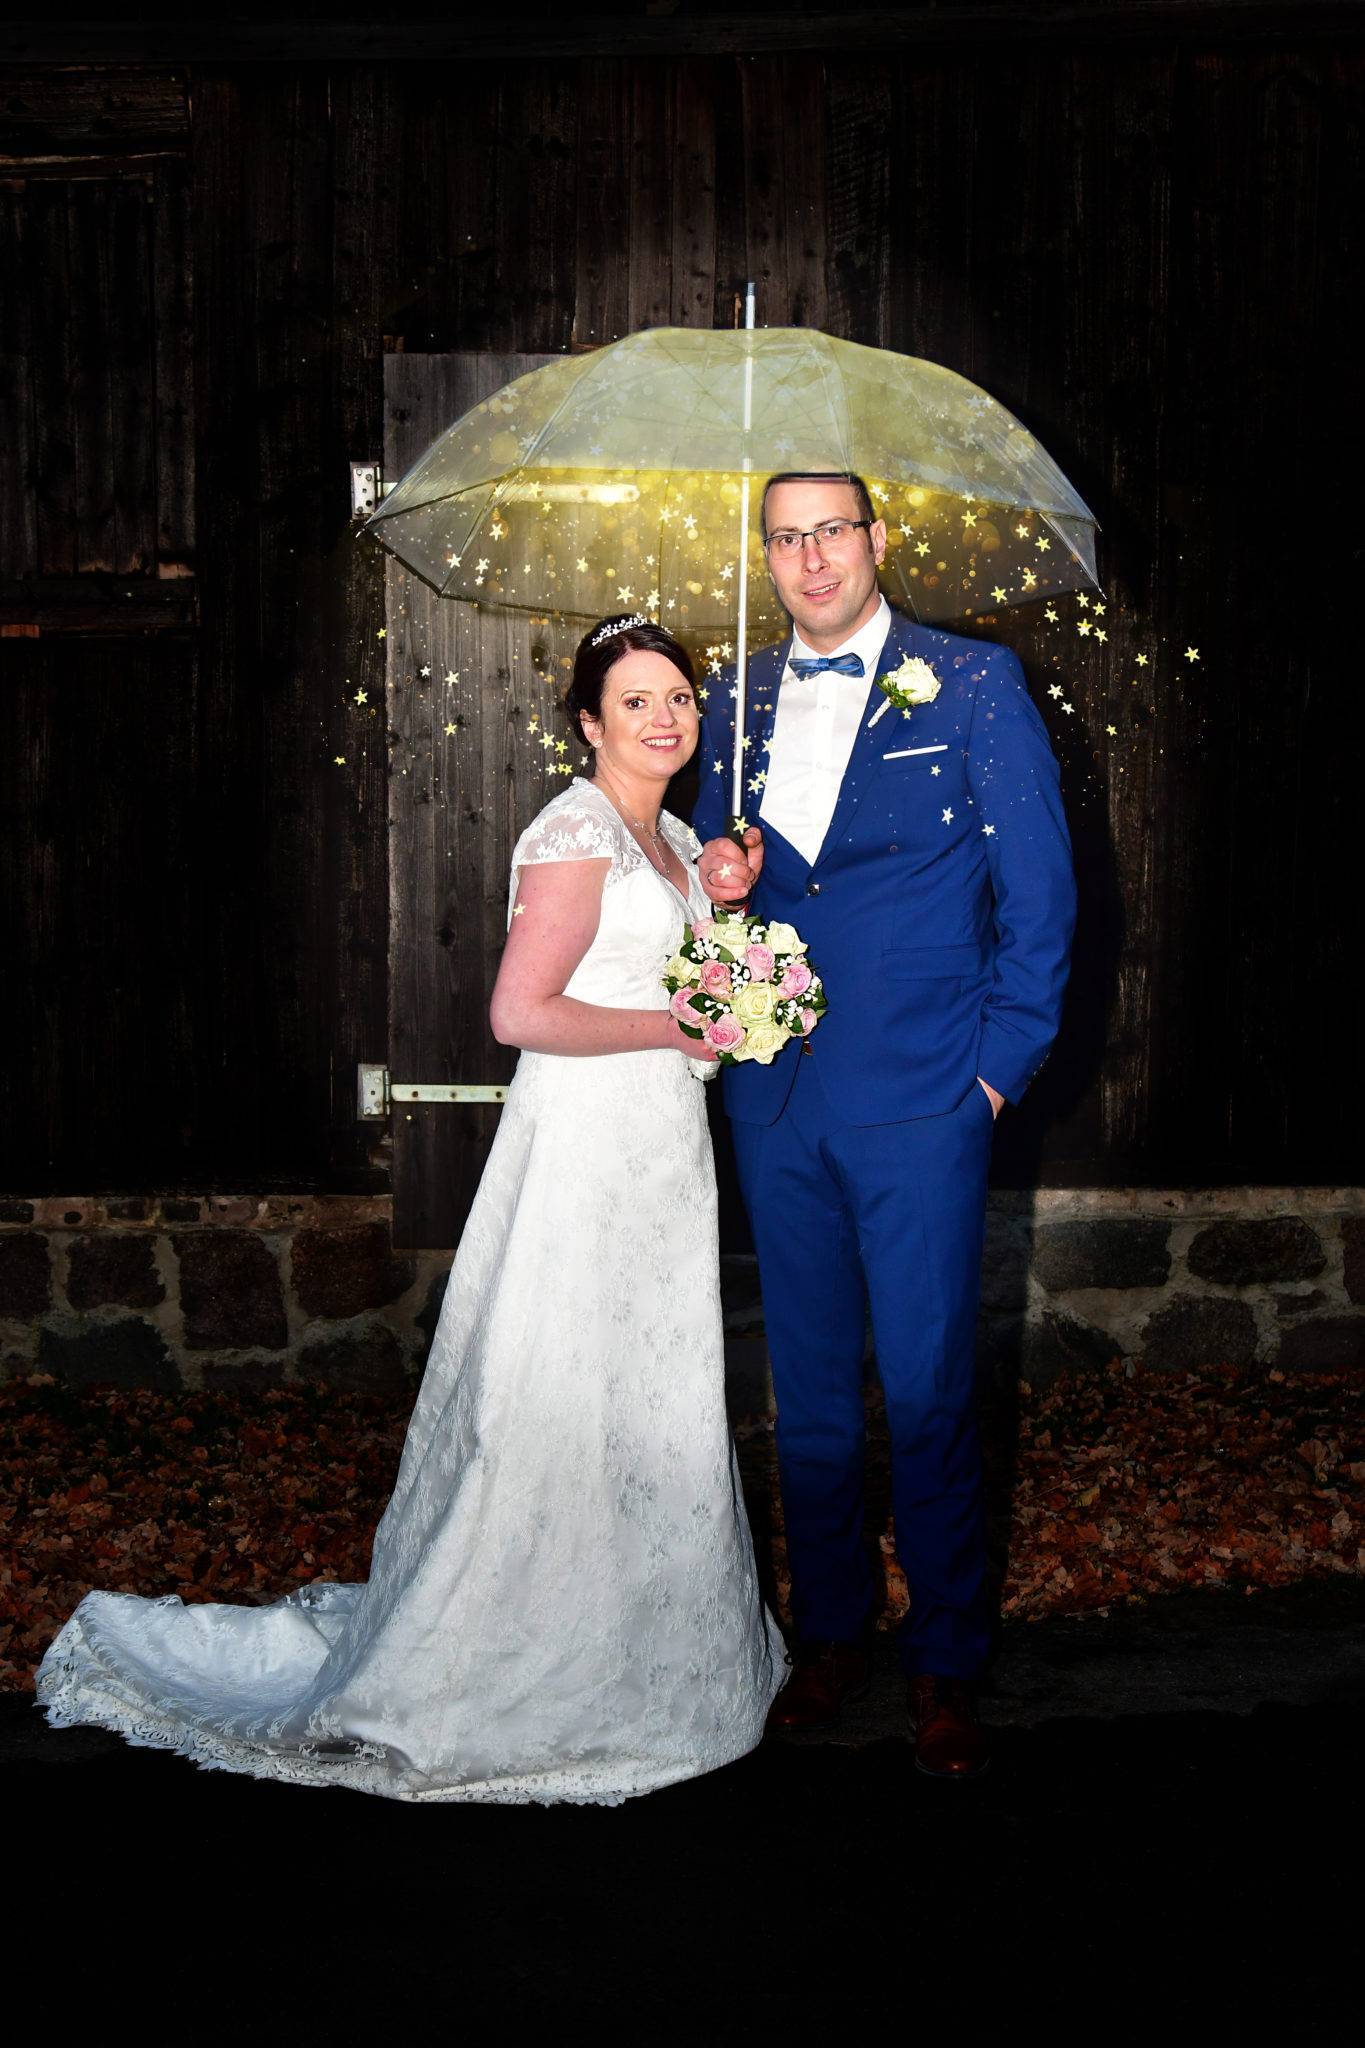 Brautpaarshooting Hochzeit unter dem Regenschirm mit Sternen und Brautstrauss